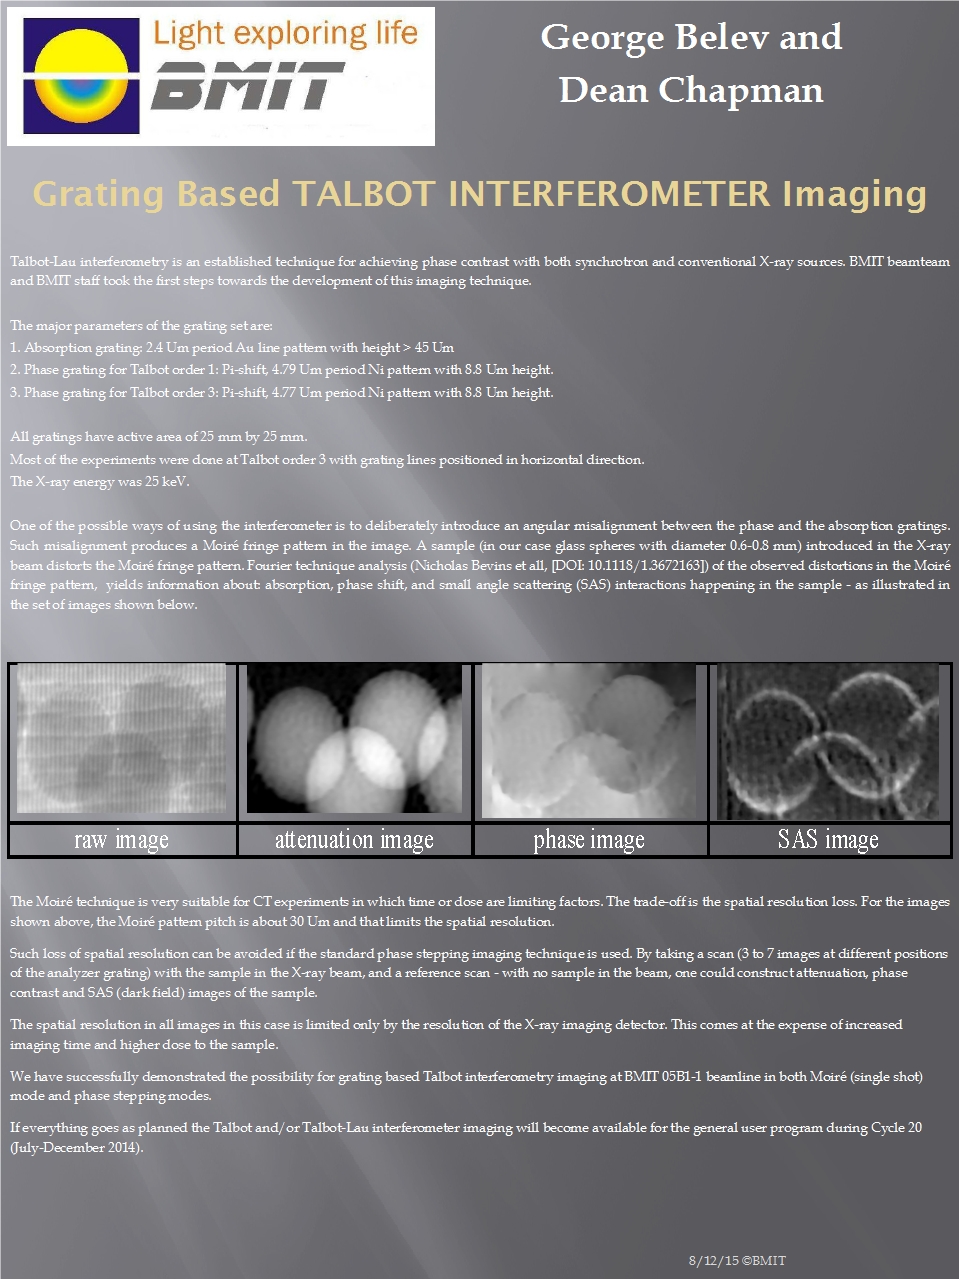 Grating Based Talbot Interferometer Imaging Image